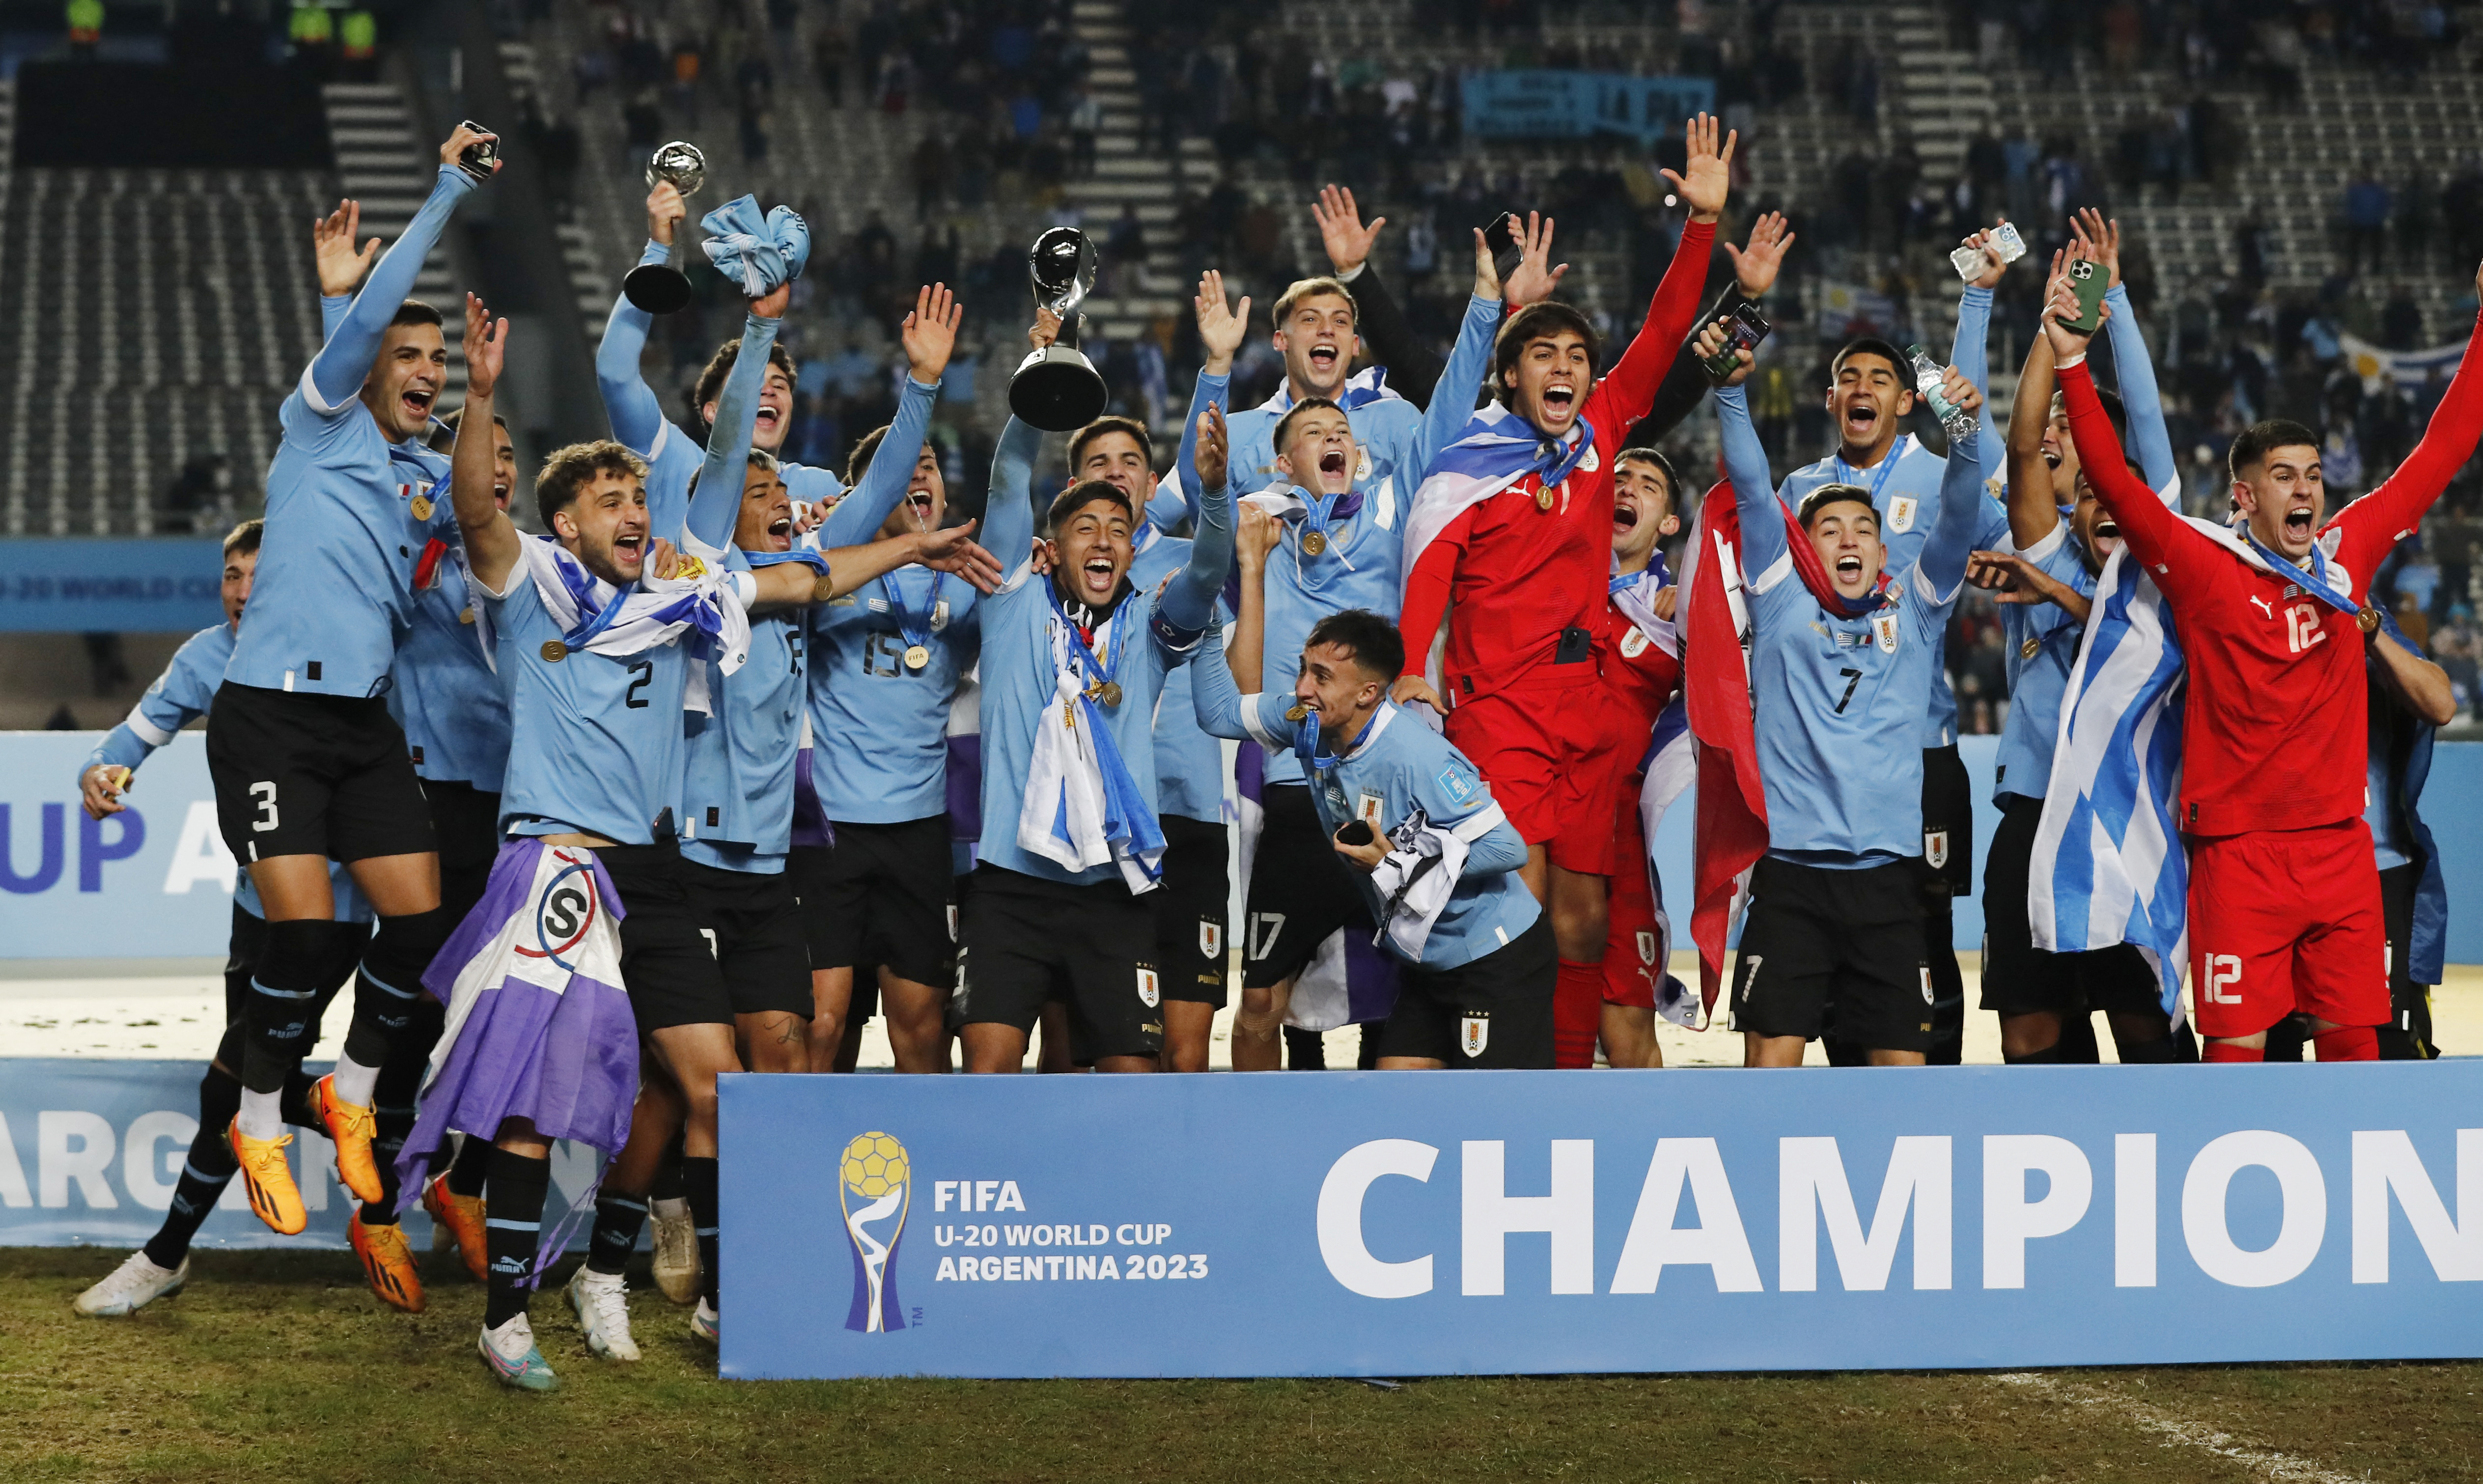 Se viene el Mundial Sub 20: cuáles son los jugadores uruguayos